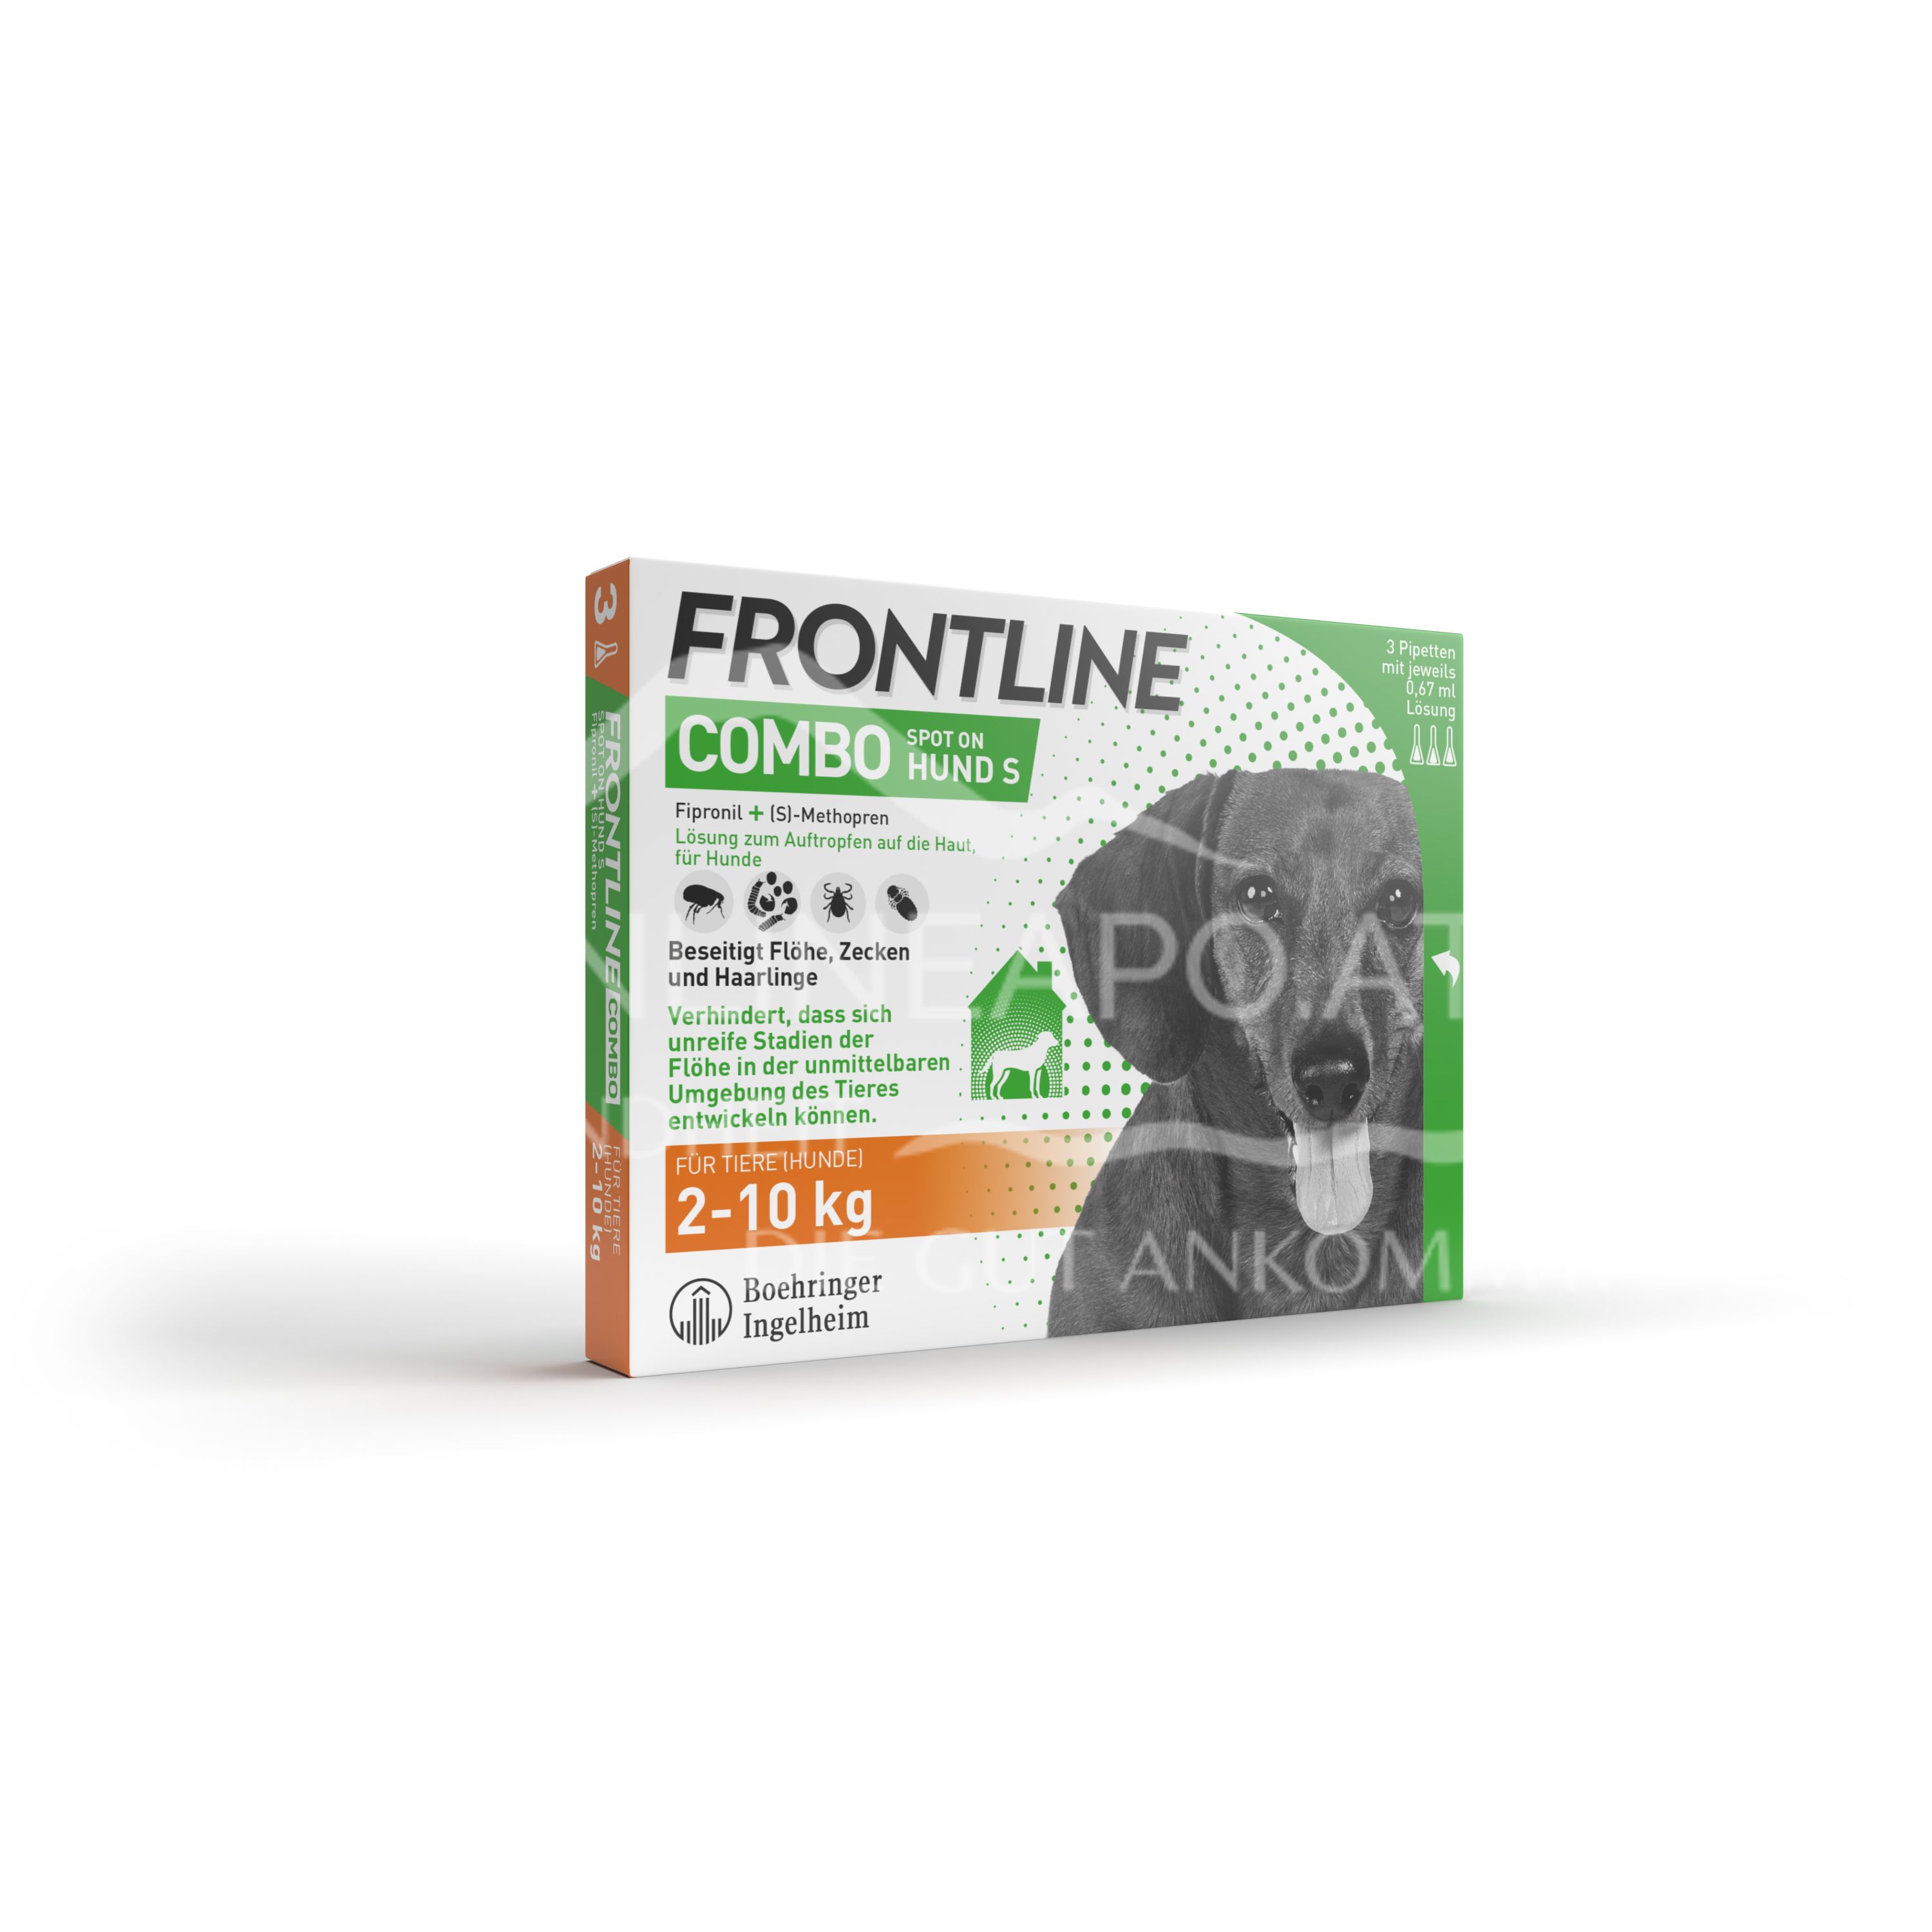 Frontline Combo Spot on Hund S Lösung zum Auftropfen auf die Haut 2 - 10 kg